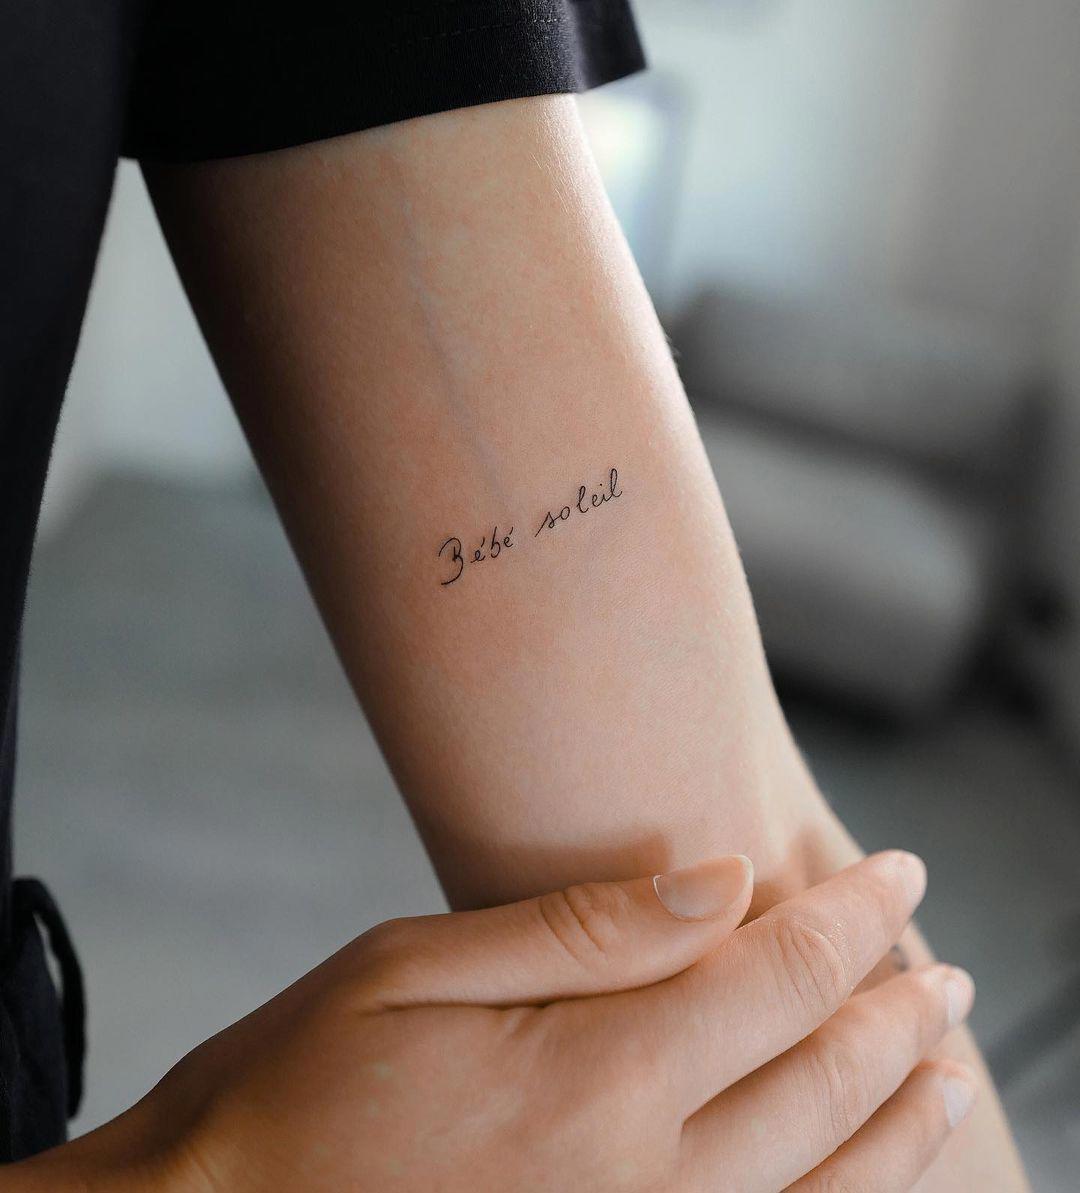 Tatuaje con letra manuscrita en el brazo